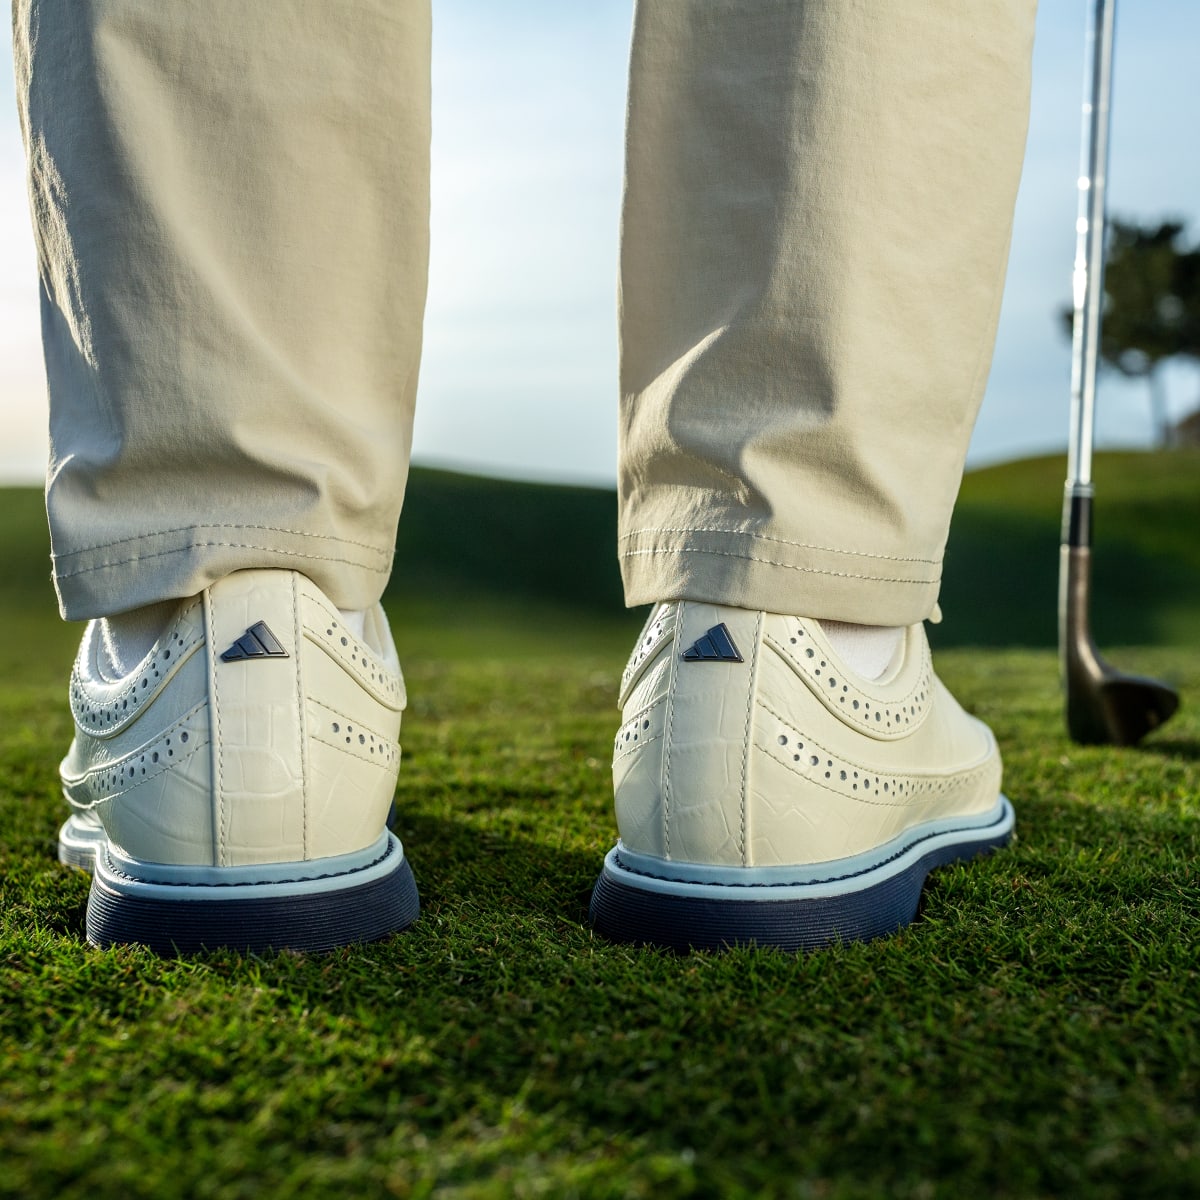 Adidas Modern Classic 80 Spikeless Golf Shoes. 5